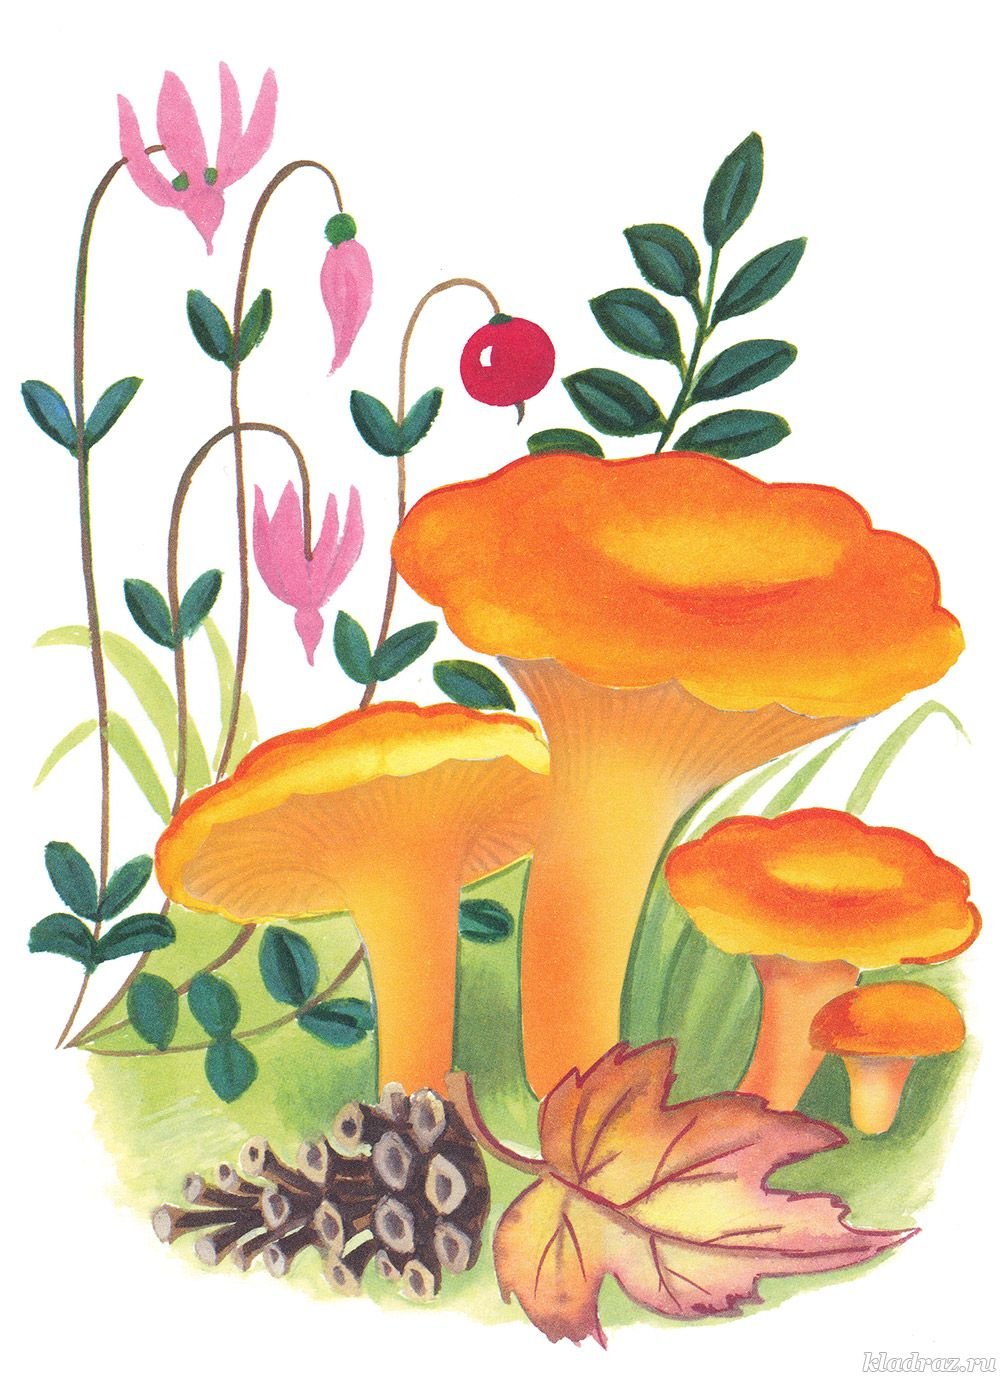 Изображение для детей гриб Лисичка